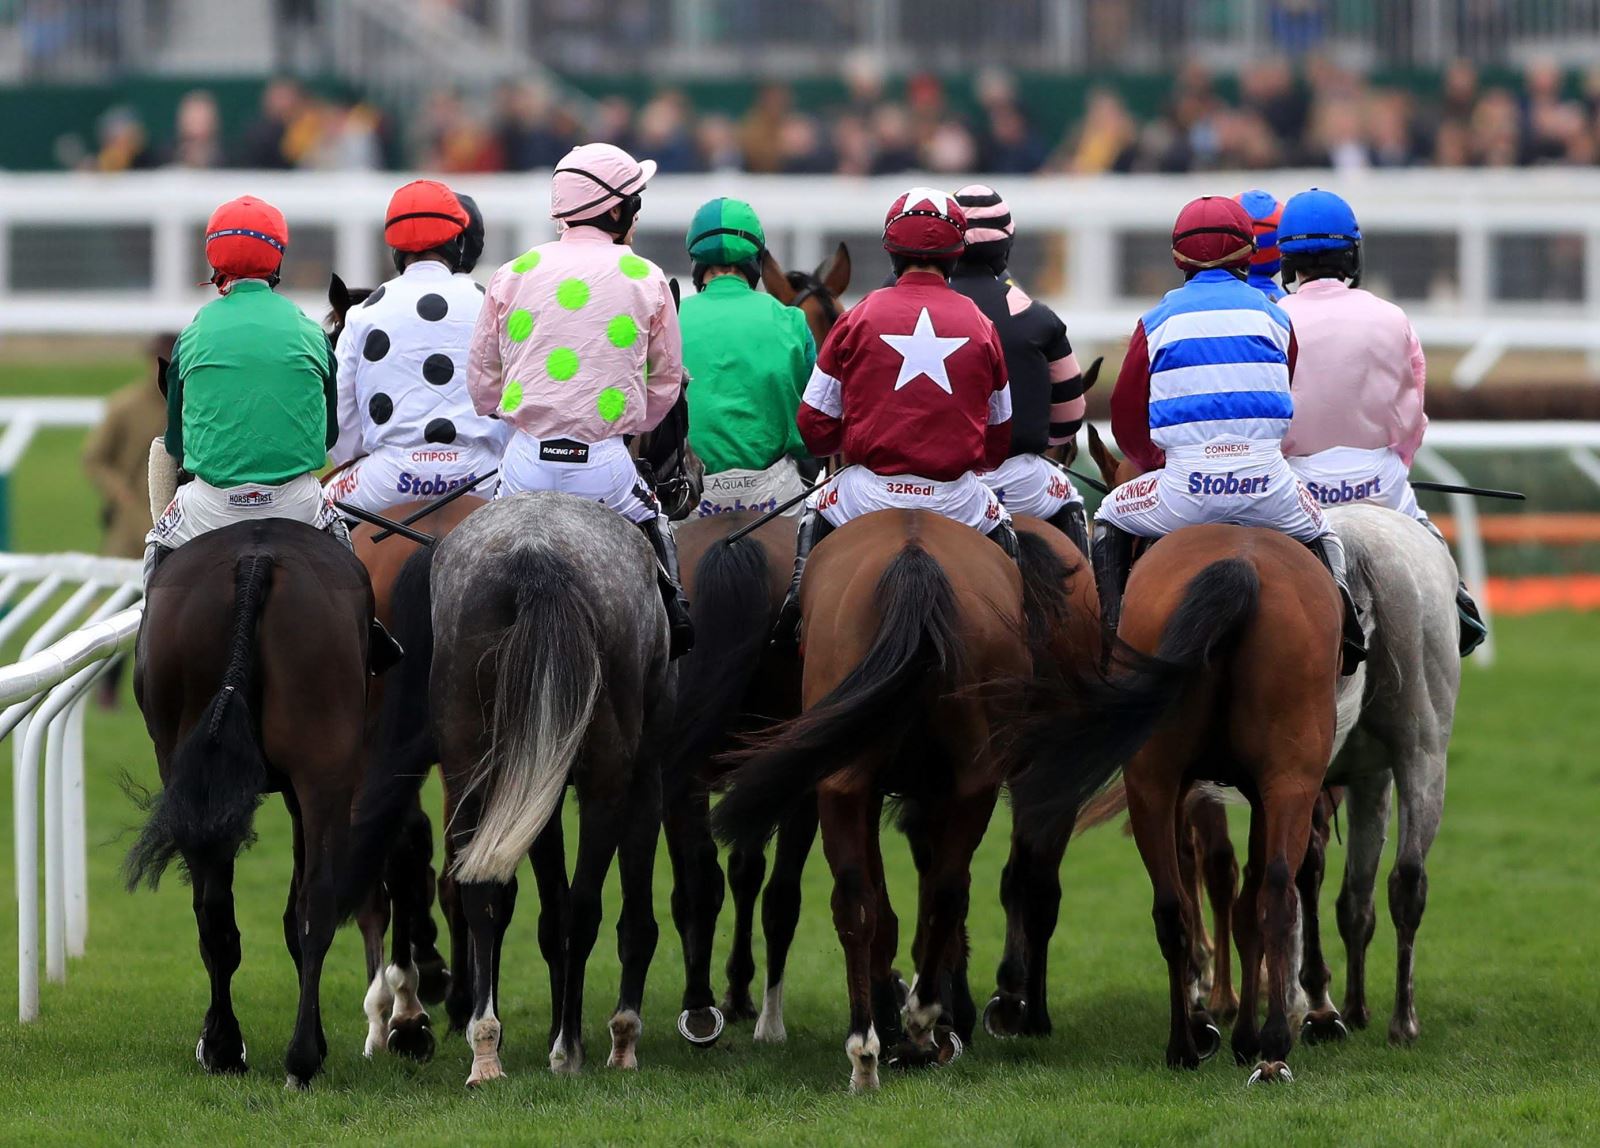 Horses with jockeys at Cheltenham Racecourse